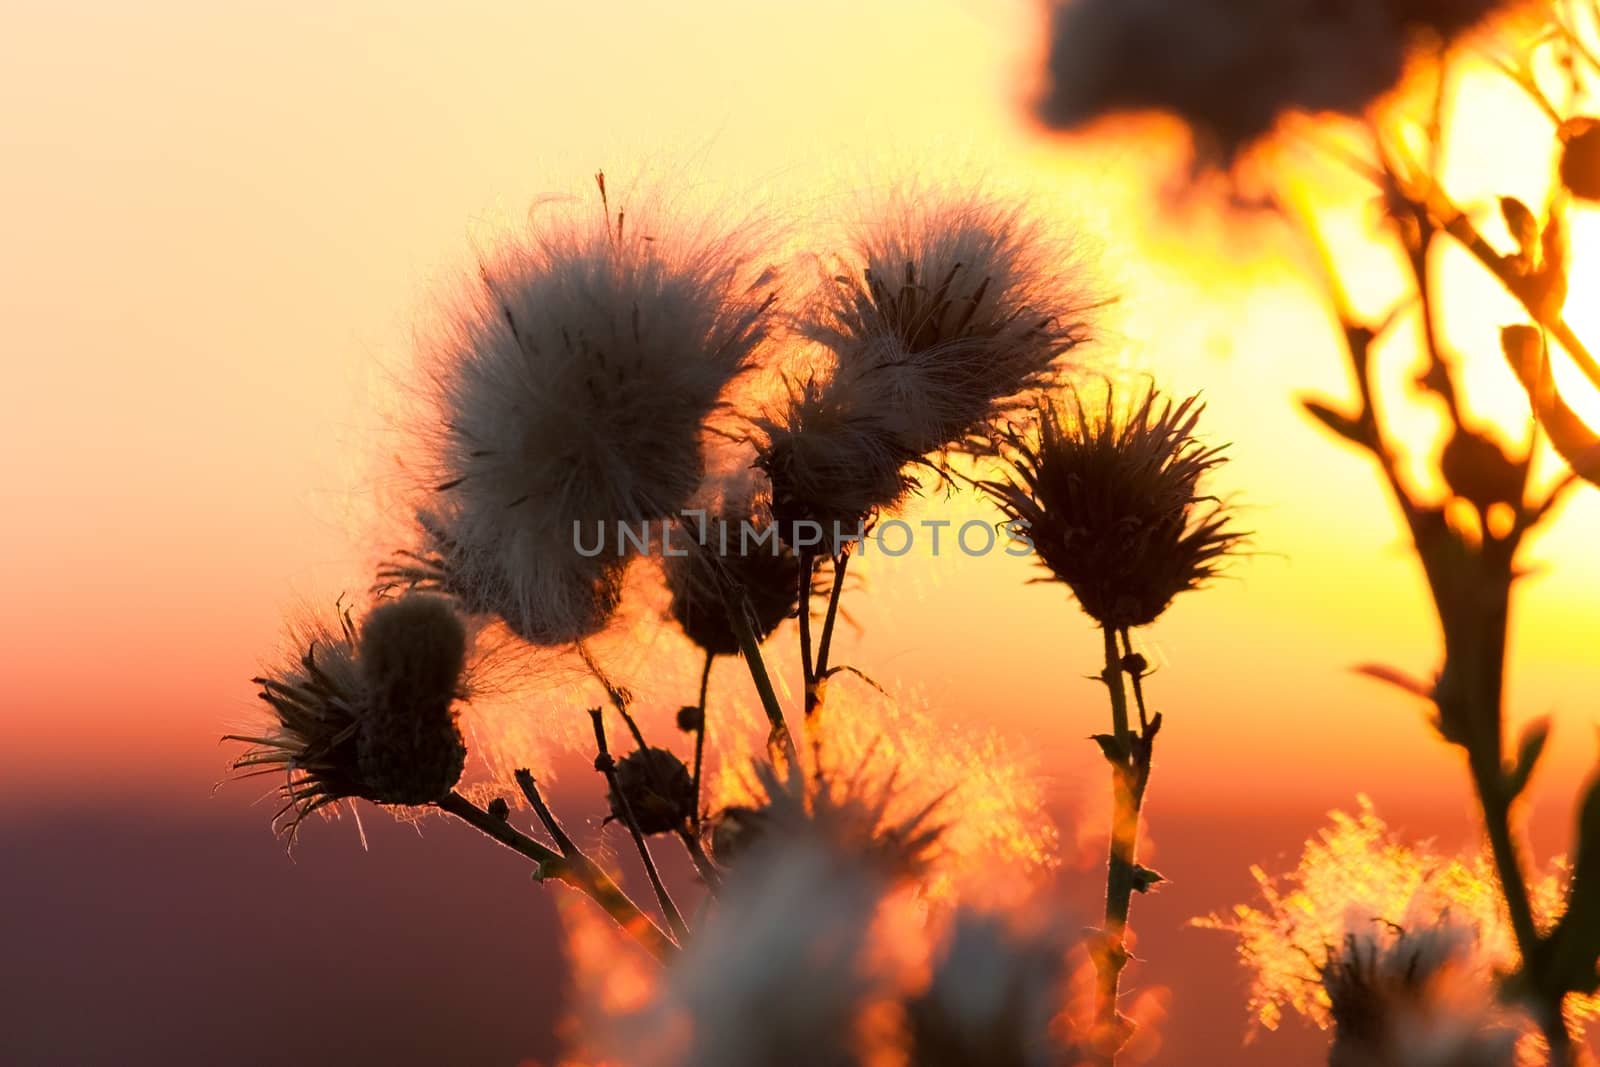 Cotton grass sunset by liwei12